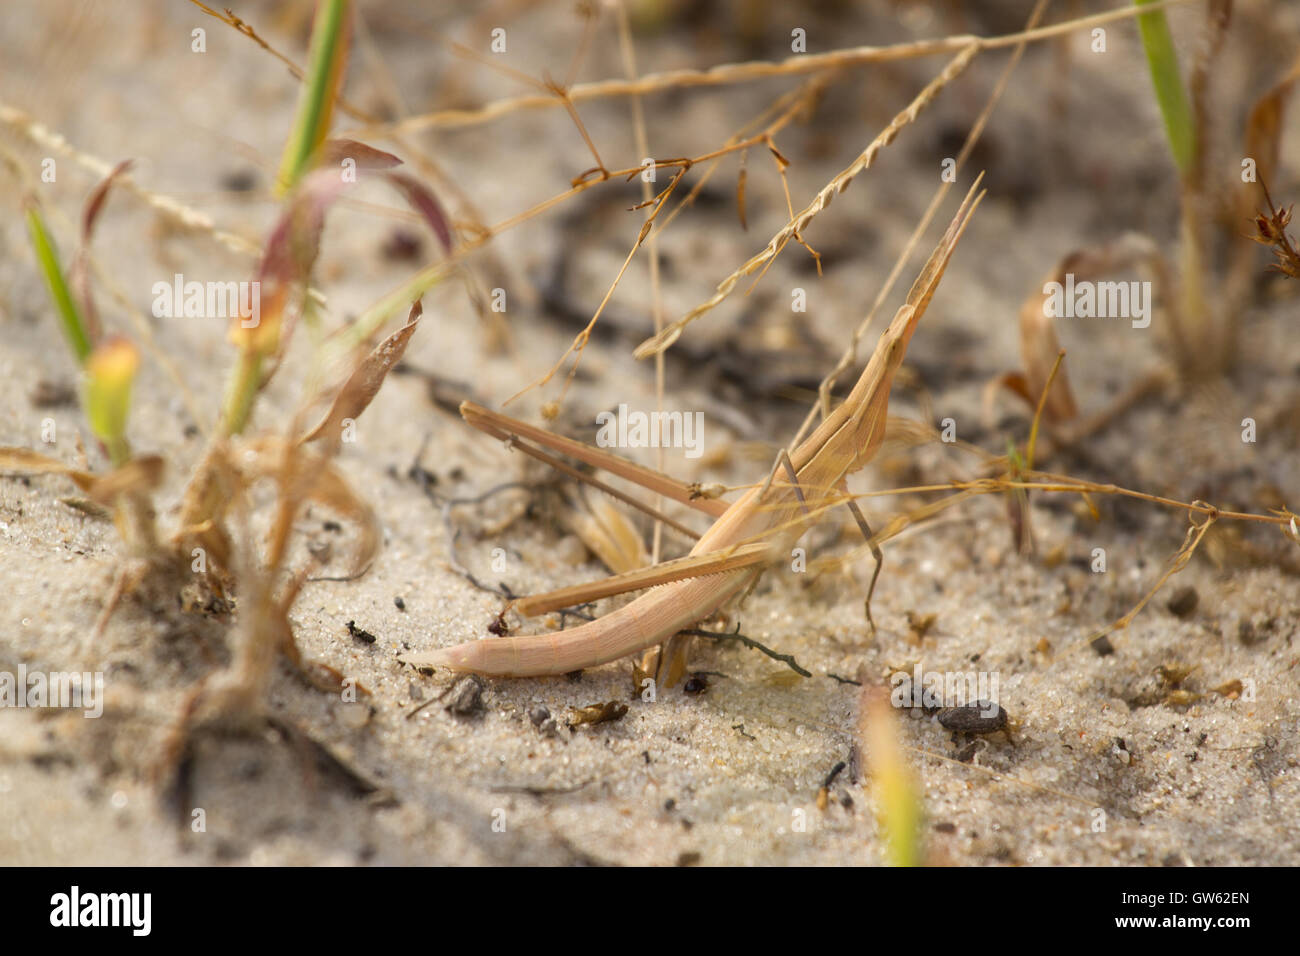 Acrida grigio in attesa sulla sabbia. Desert locust, insetto Foto Stock